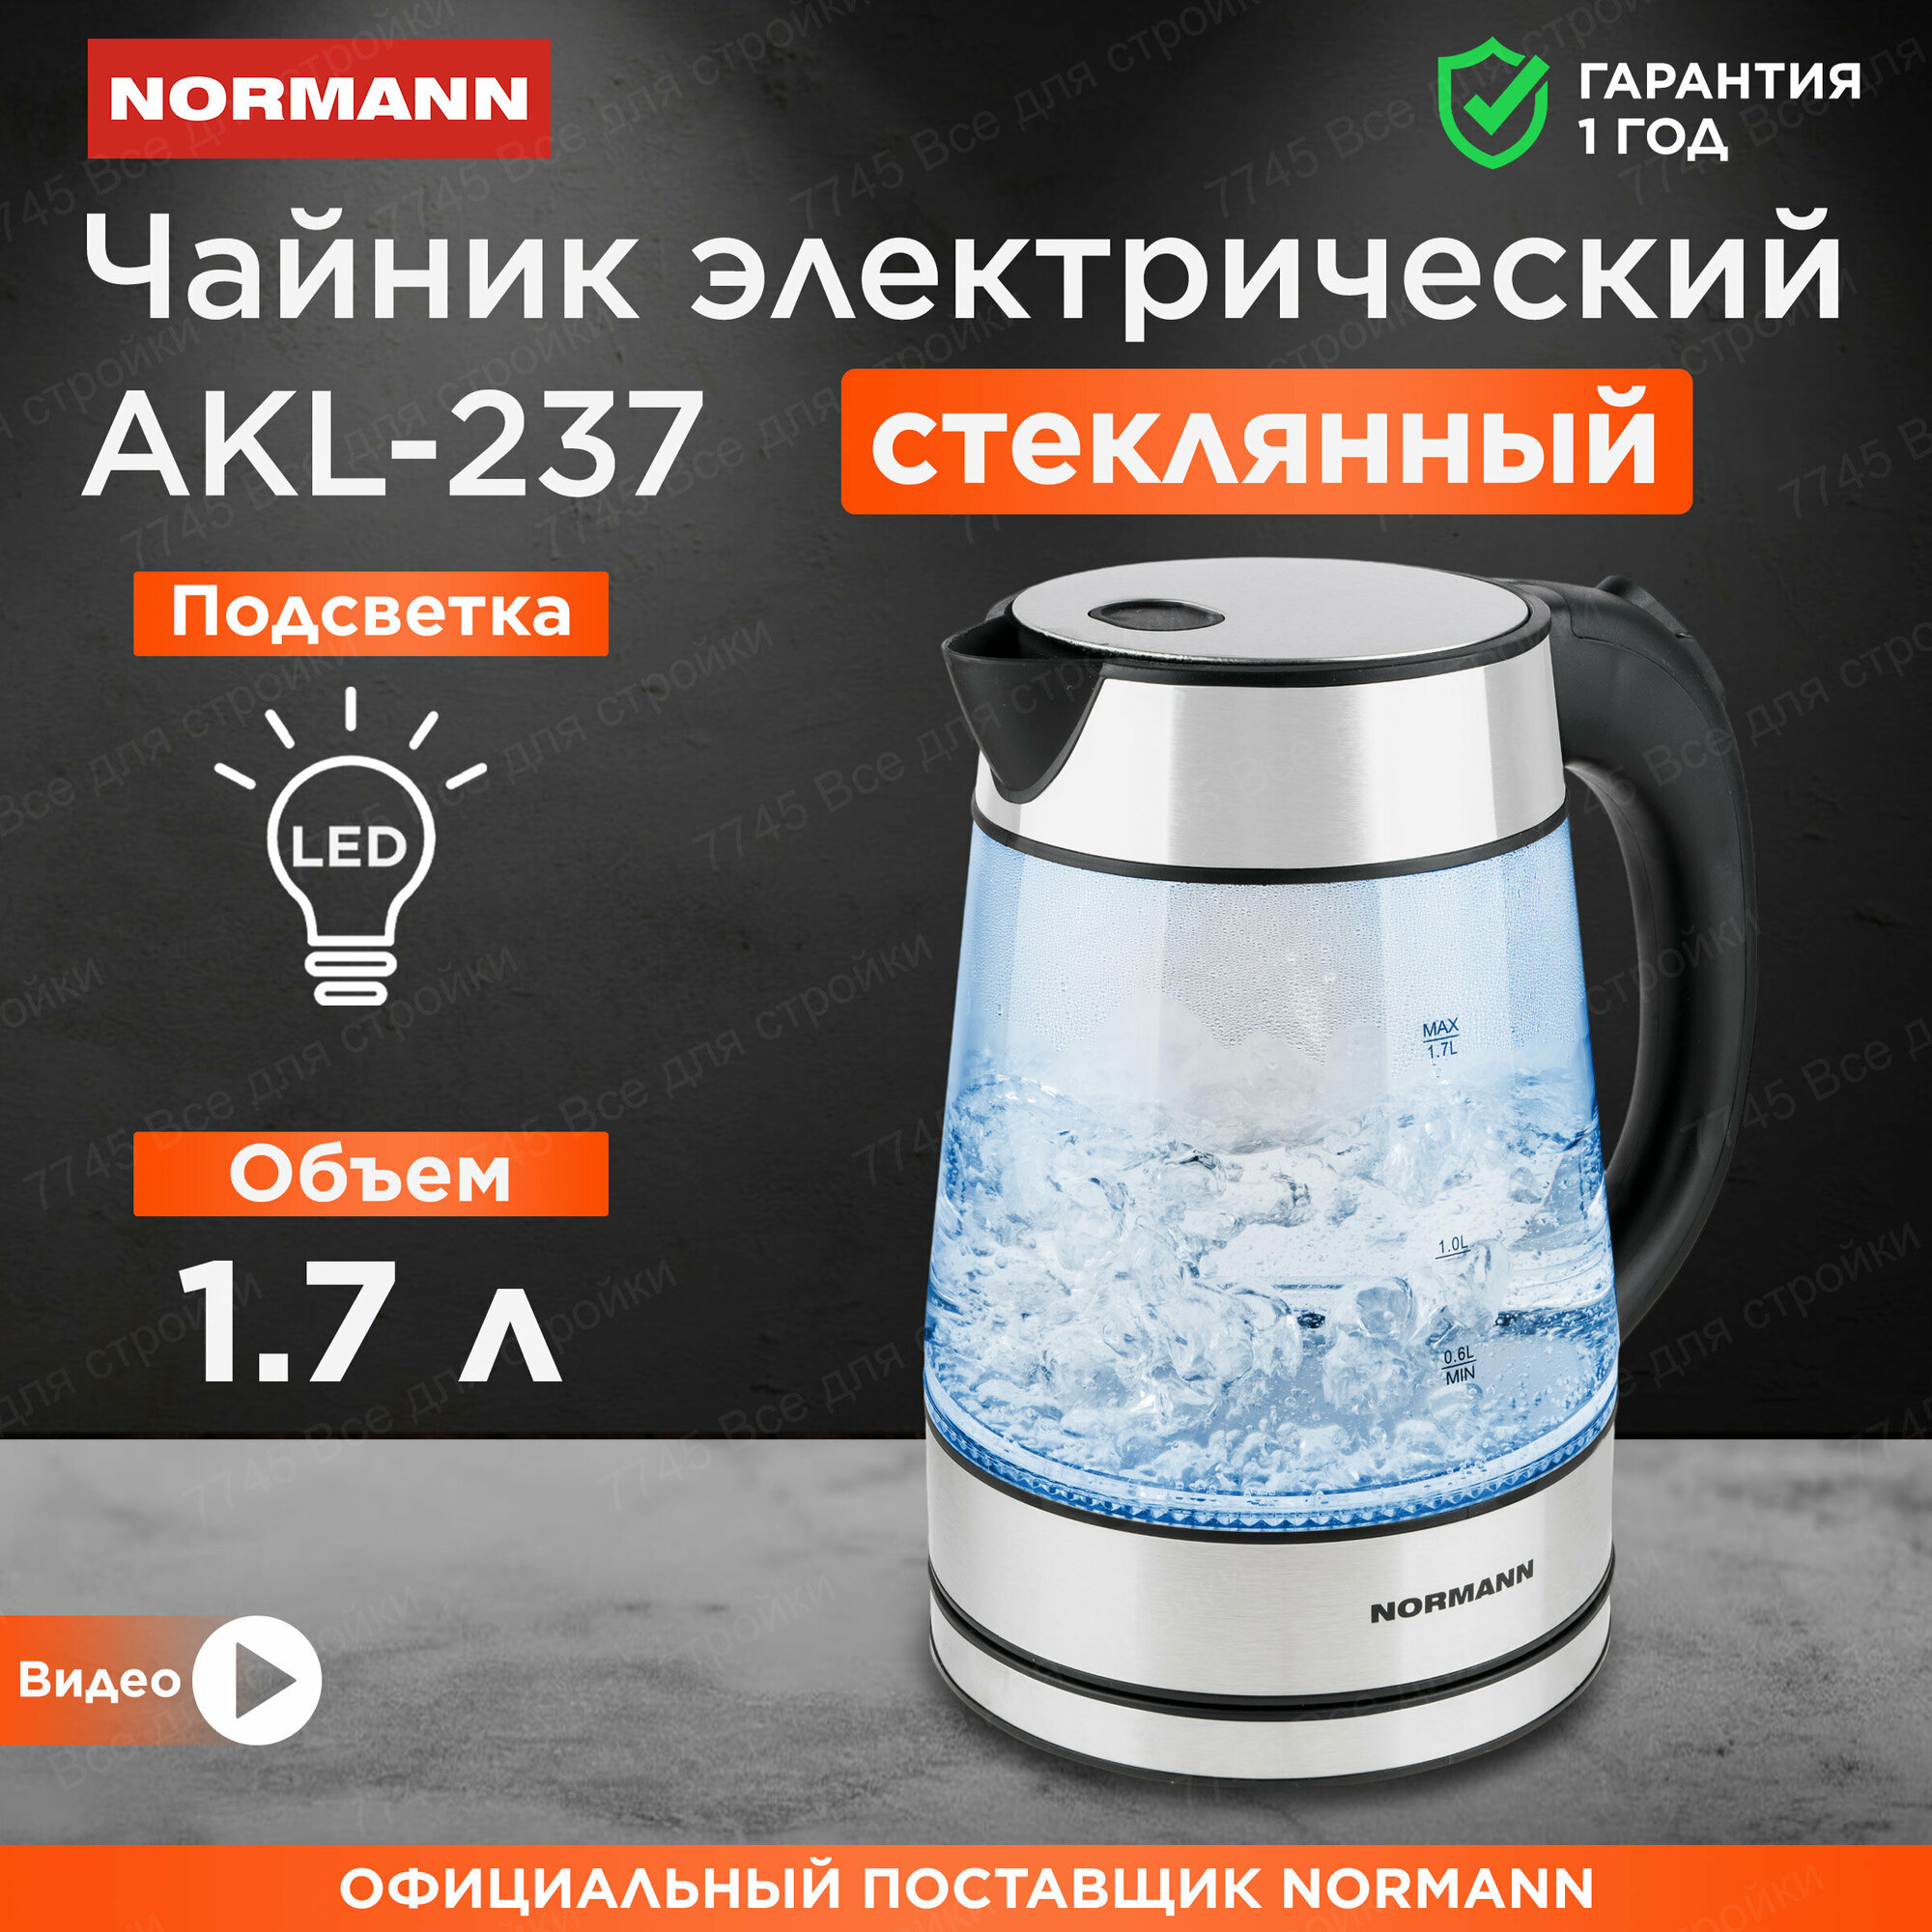 Чайник электрический стеклянный с подсветкой 1,7 л NORMANN AKL-237